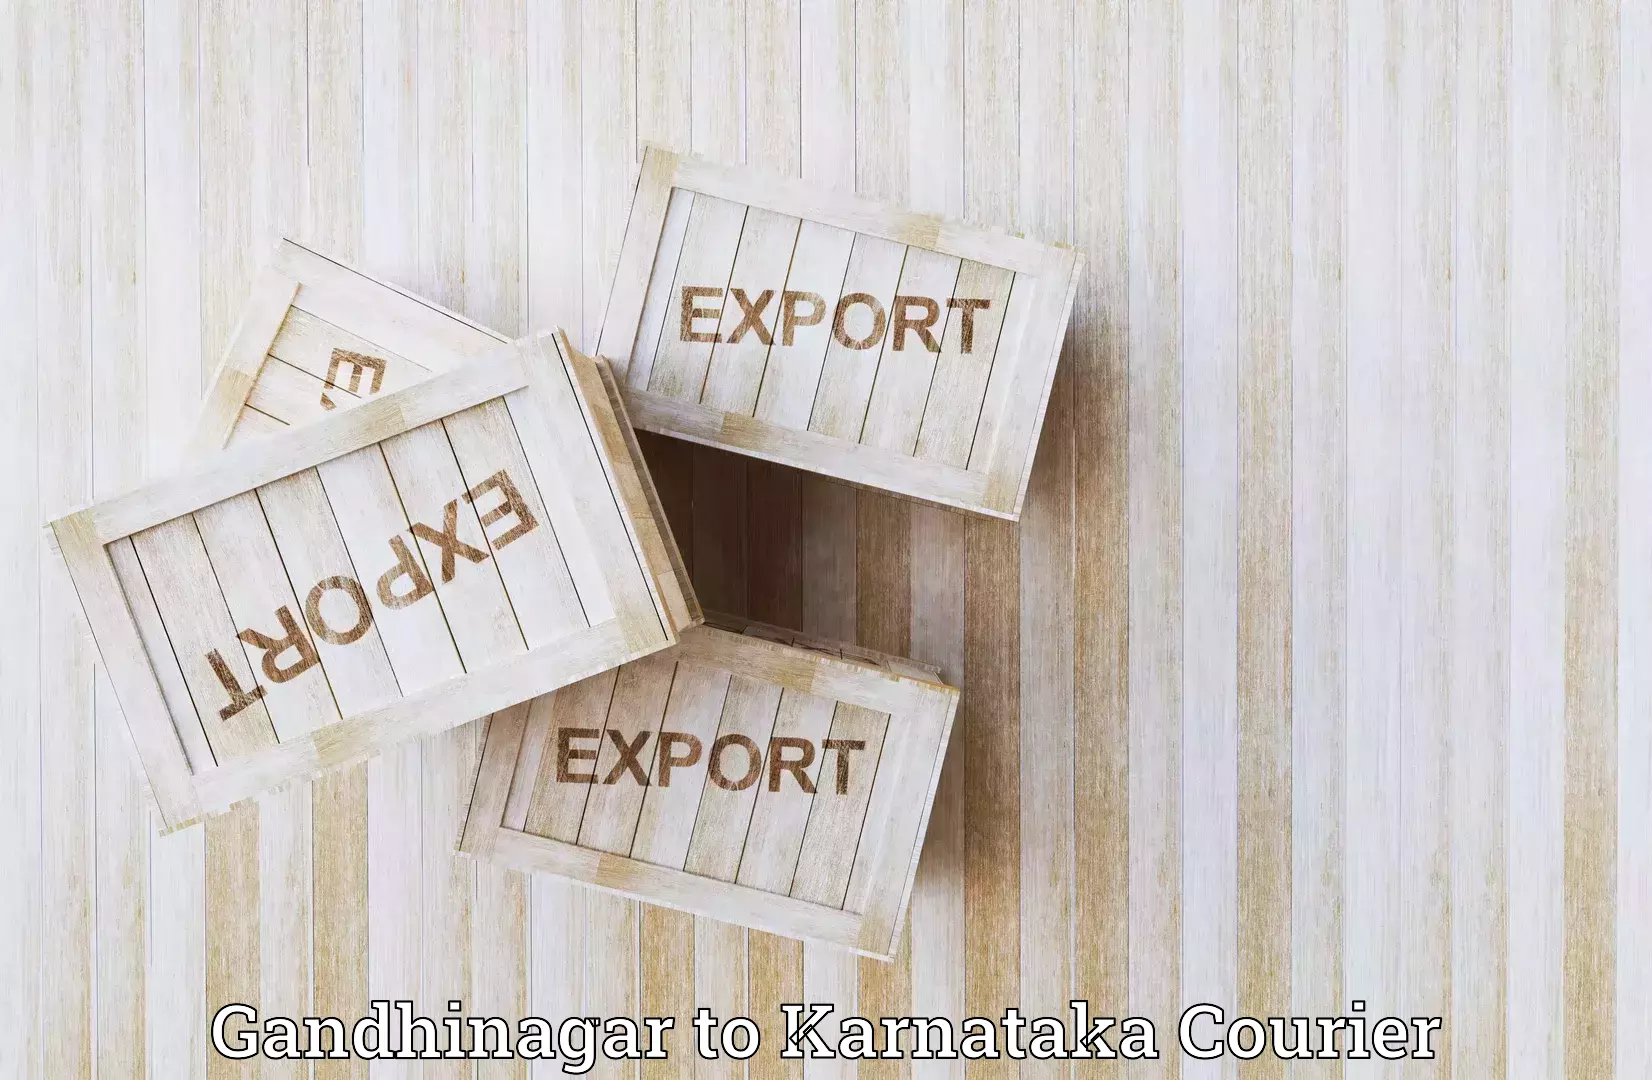 Nationwide shipping coverage Gandhinagar to Kanjarakatte